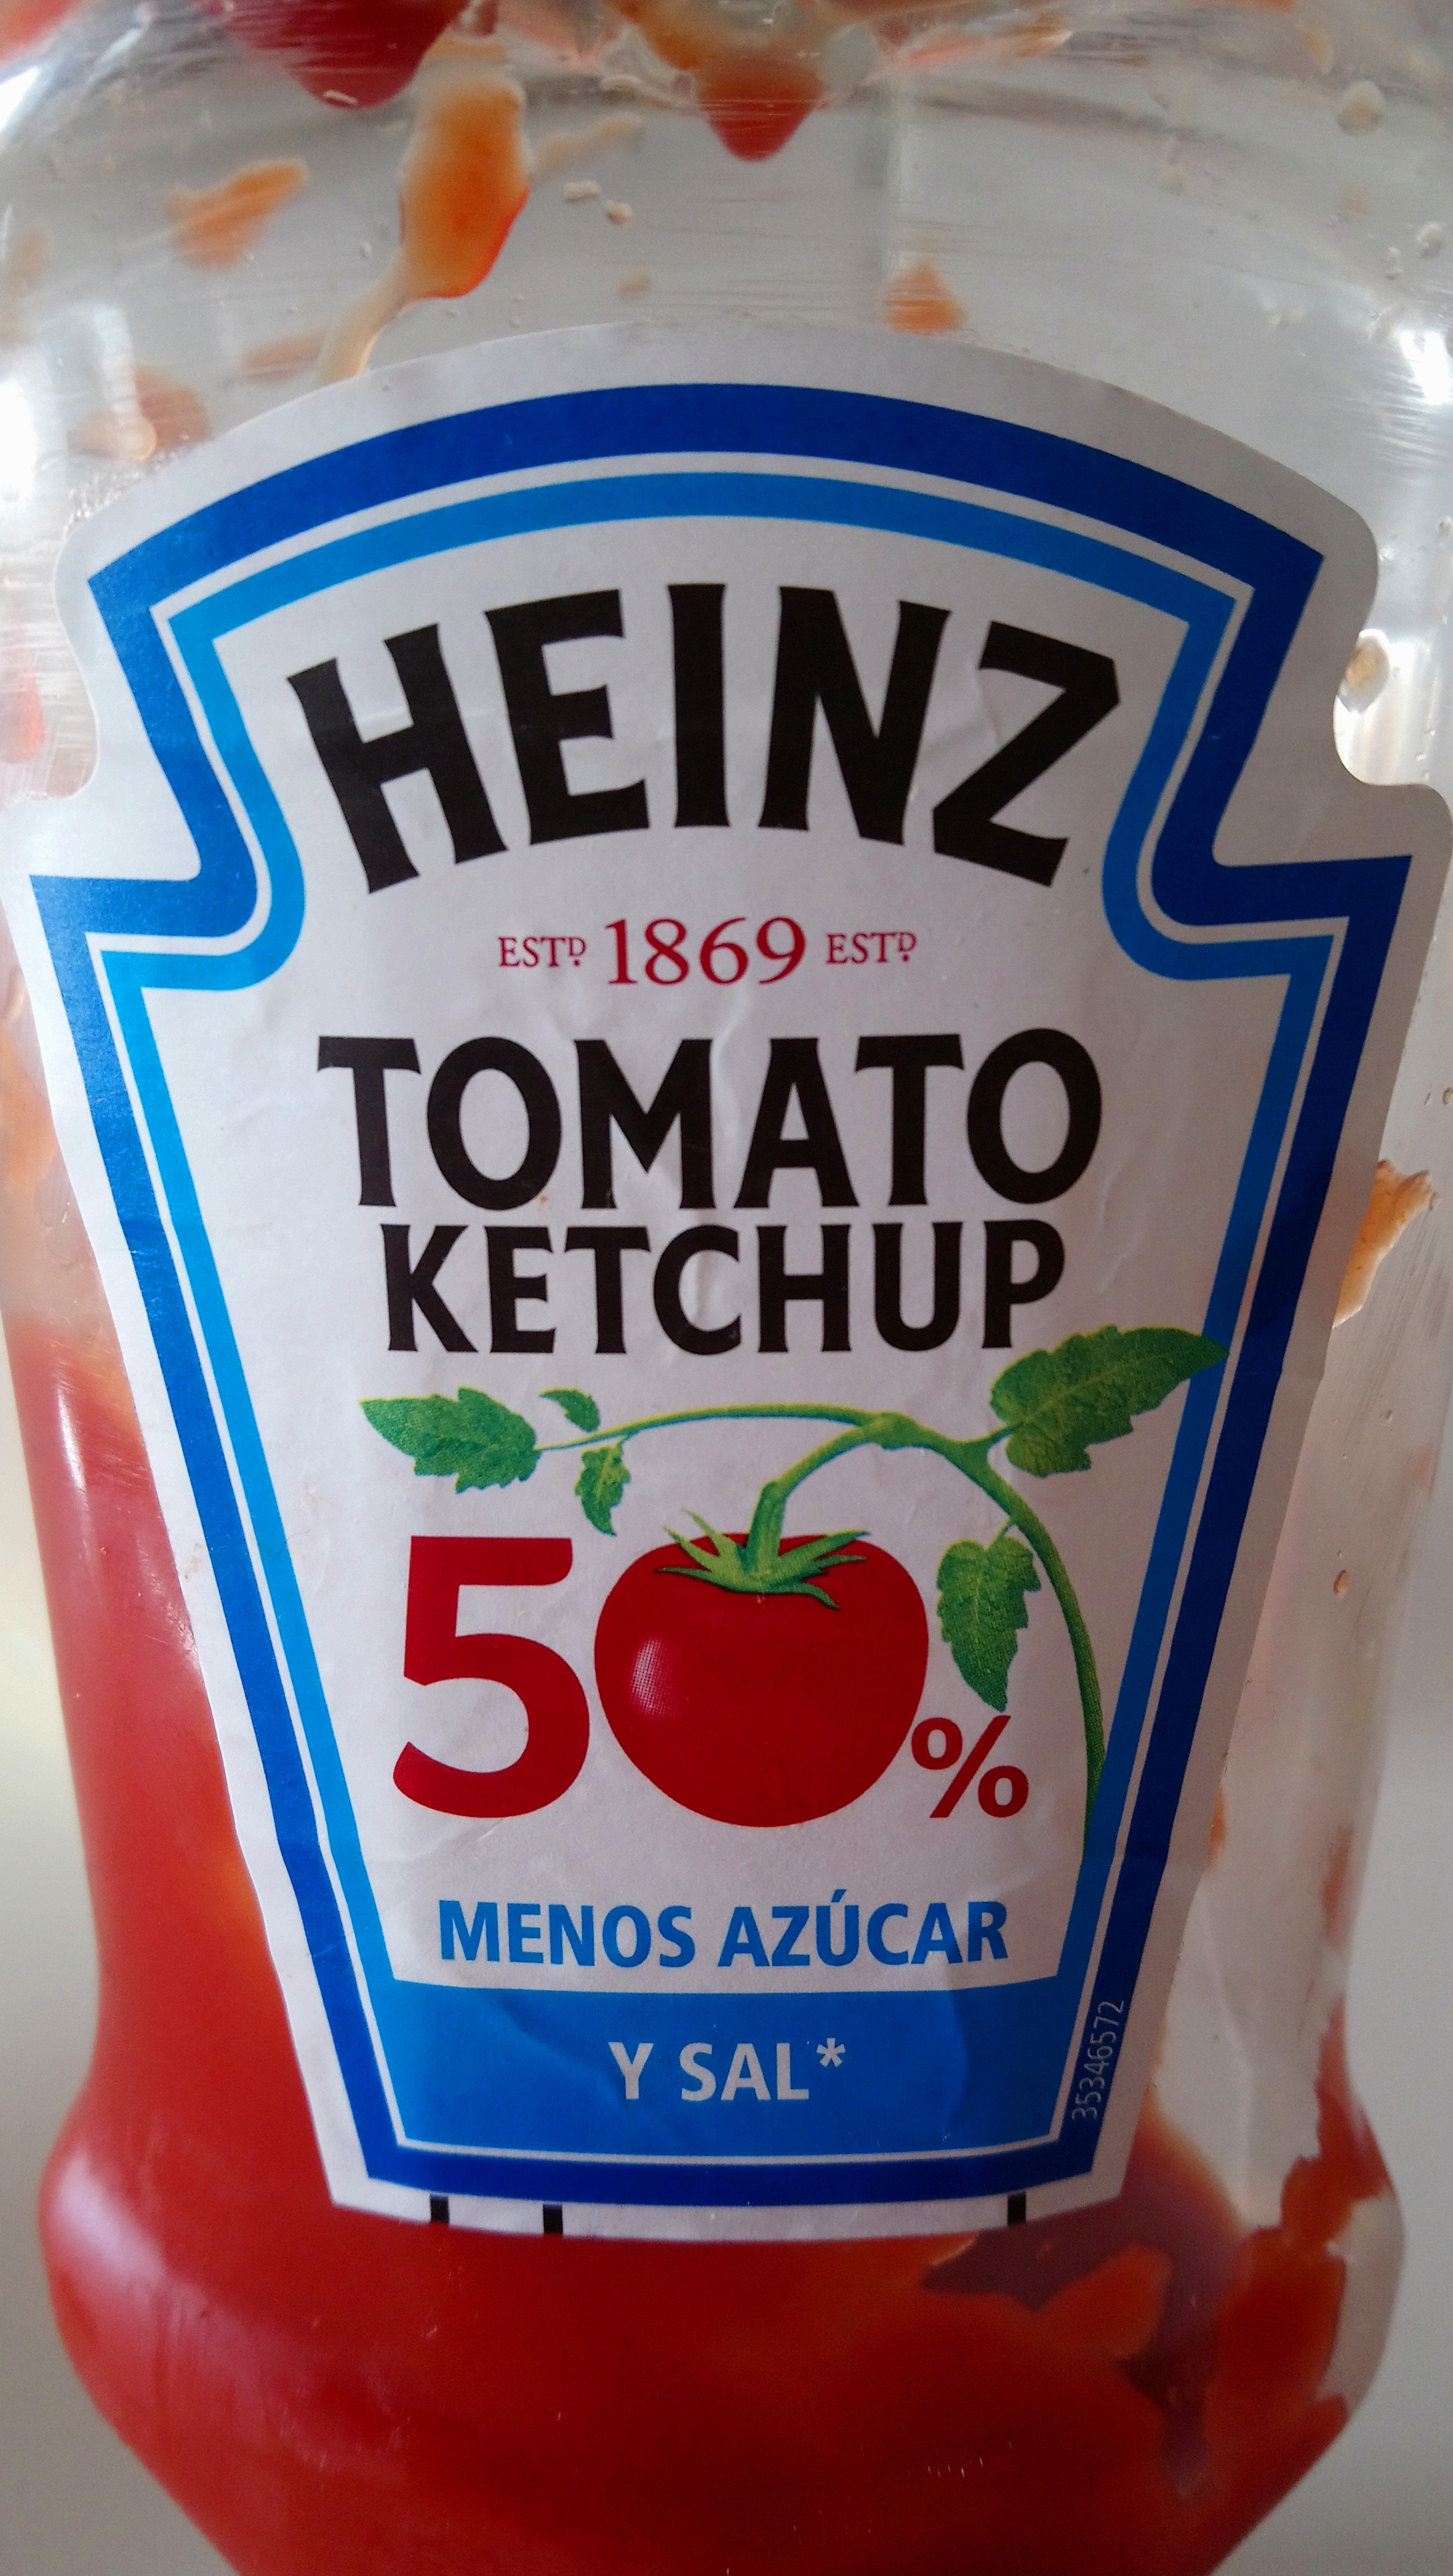 Tomato ketchup 50% menos azúcar - Product